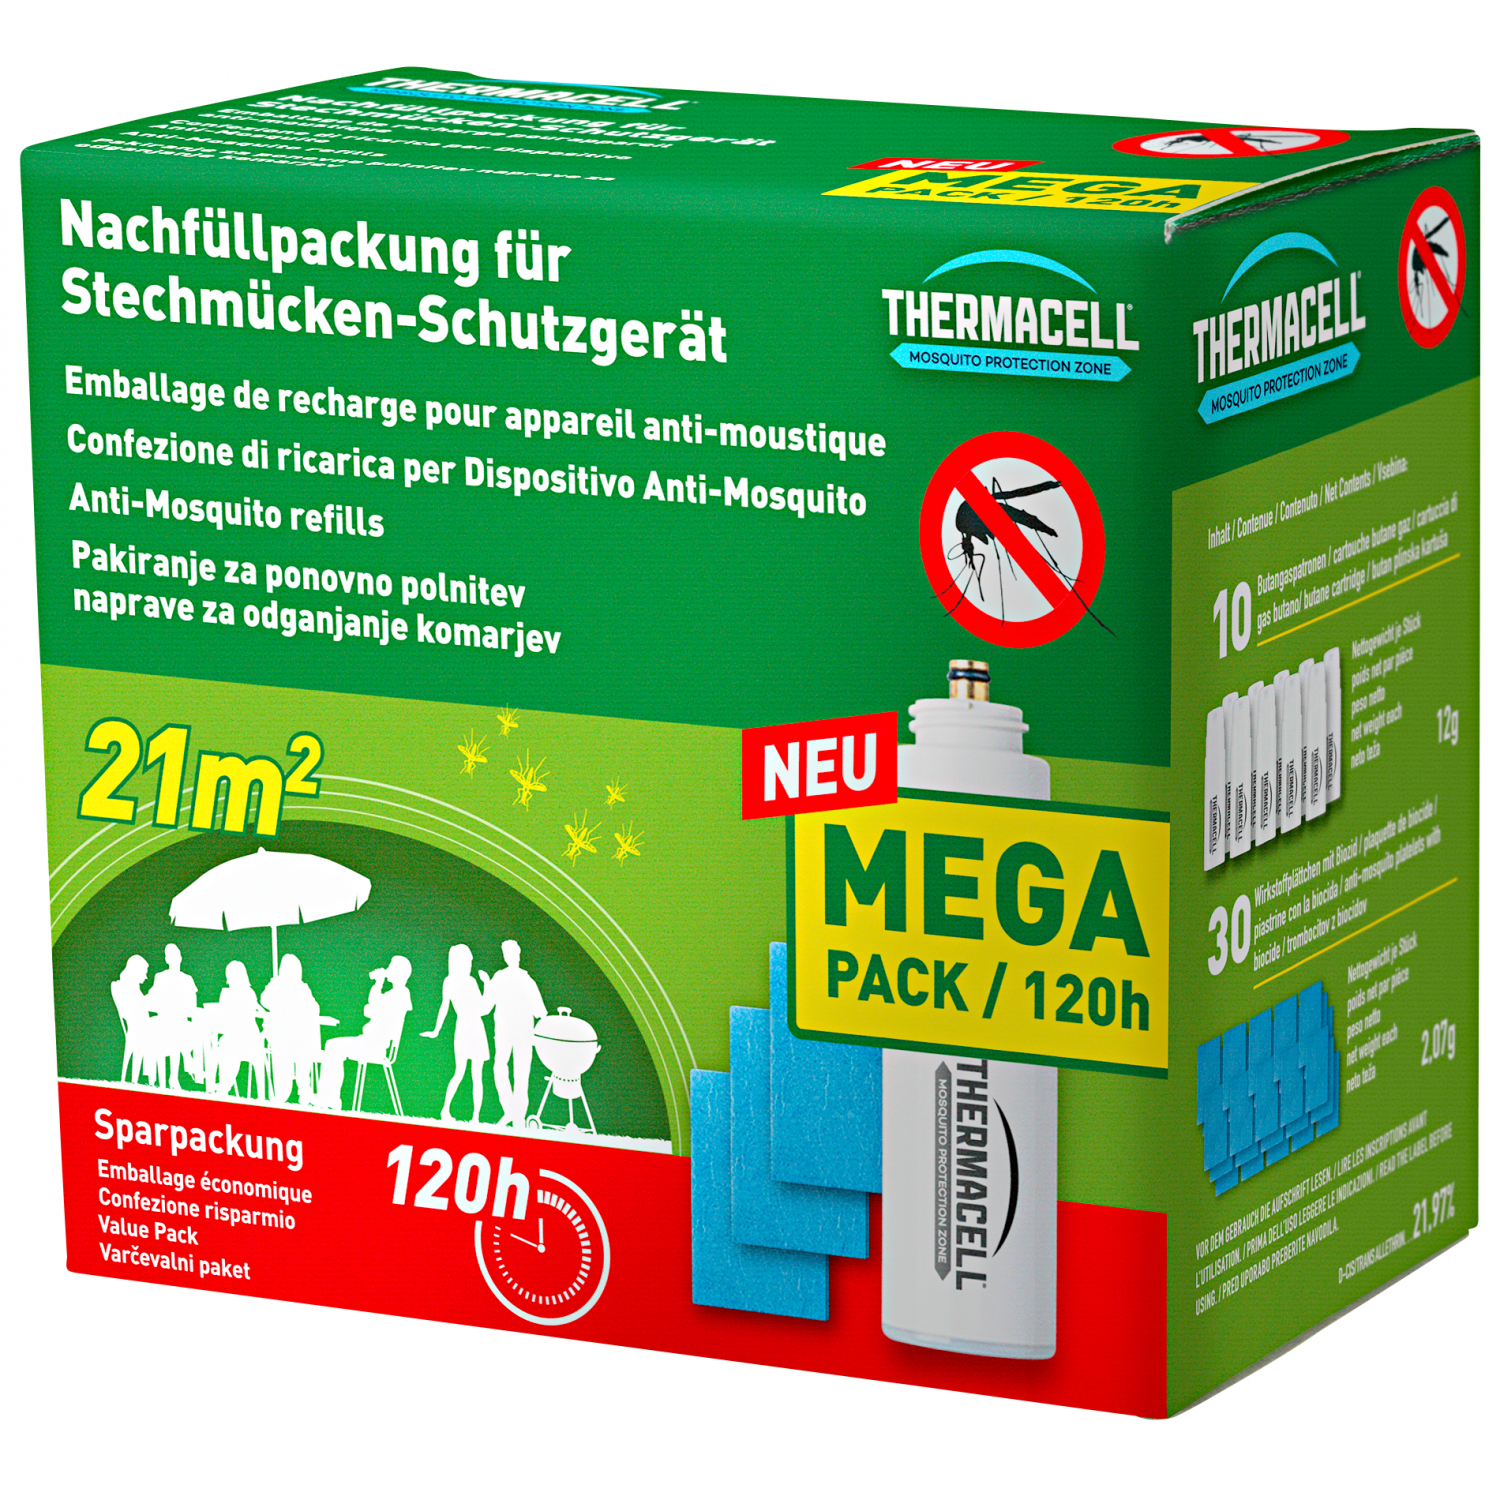 ThermaCell Thermacell Nachfüllpackung für Stechmücken-Schutzgerät 